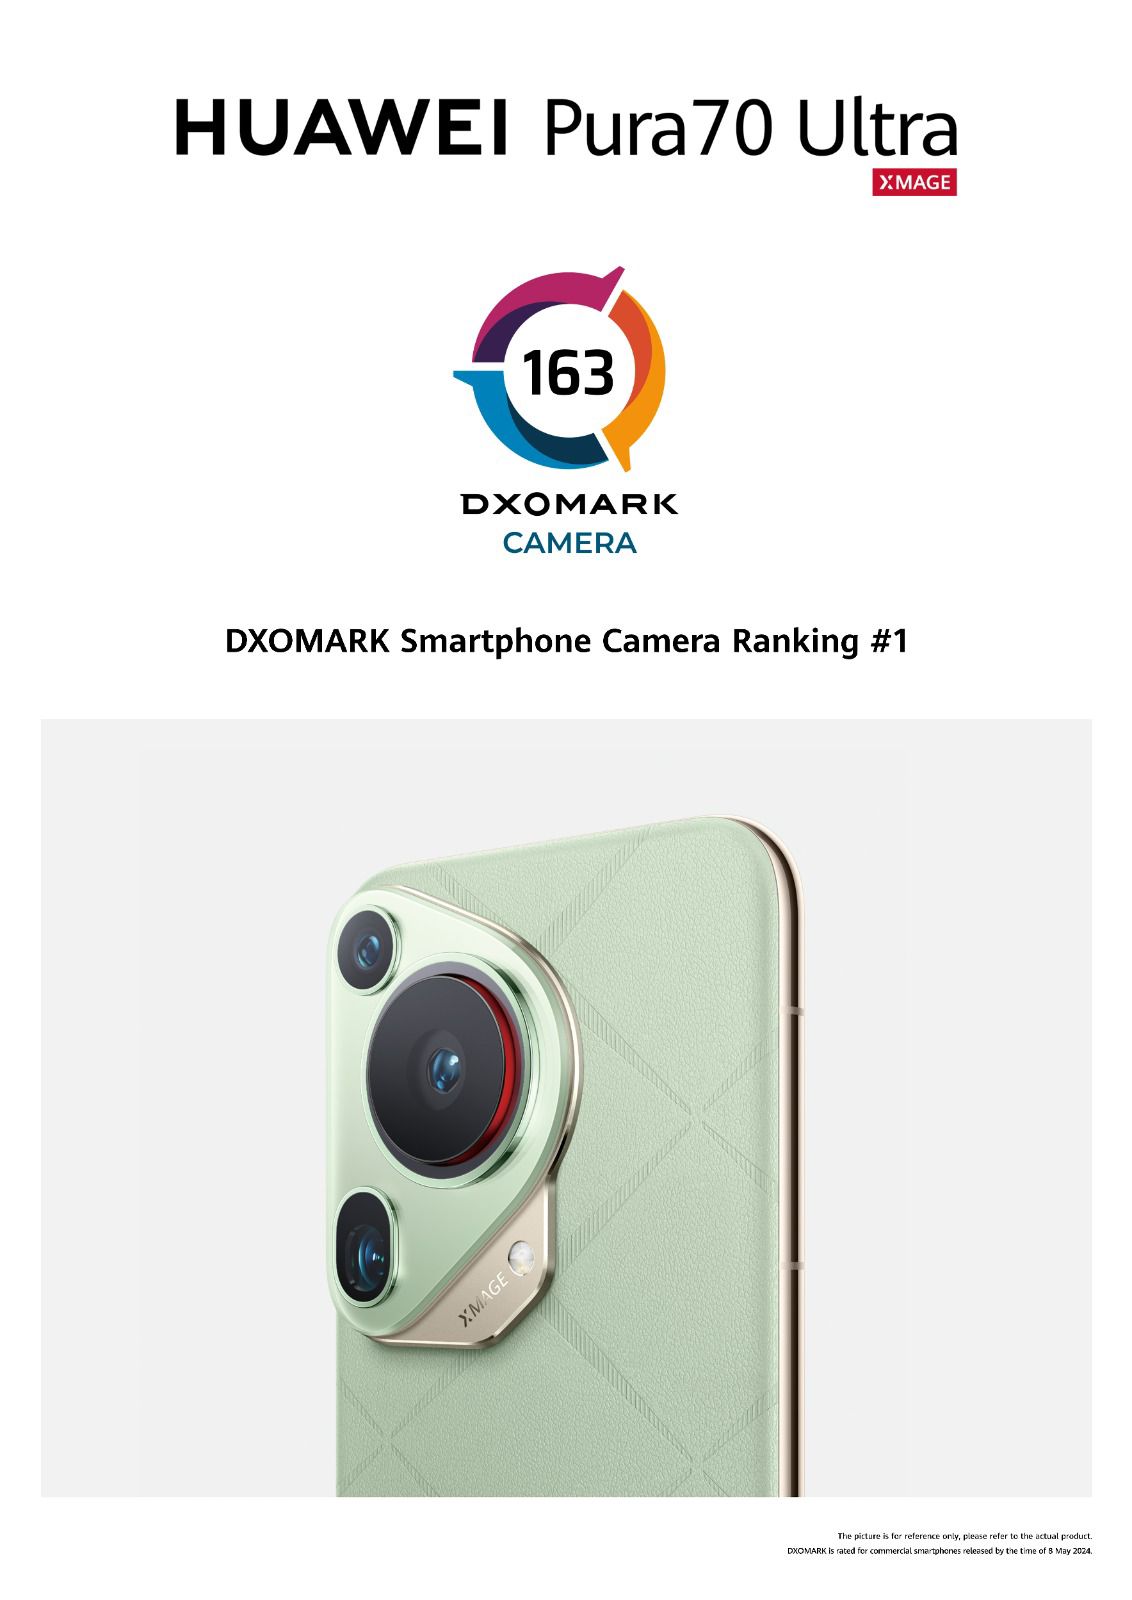 وصل هاتف HUAWEI Pura 70 Ultra الجديد إلى قمة تصنيفات كاميرات الهواتف في DXOMARK